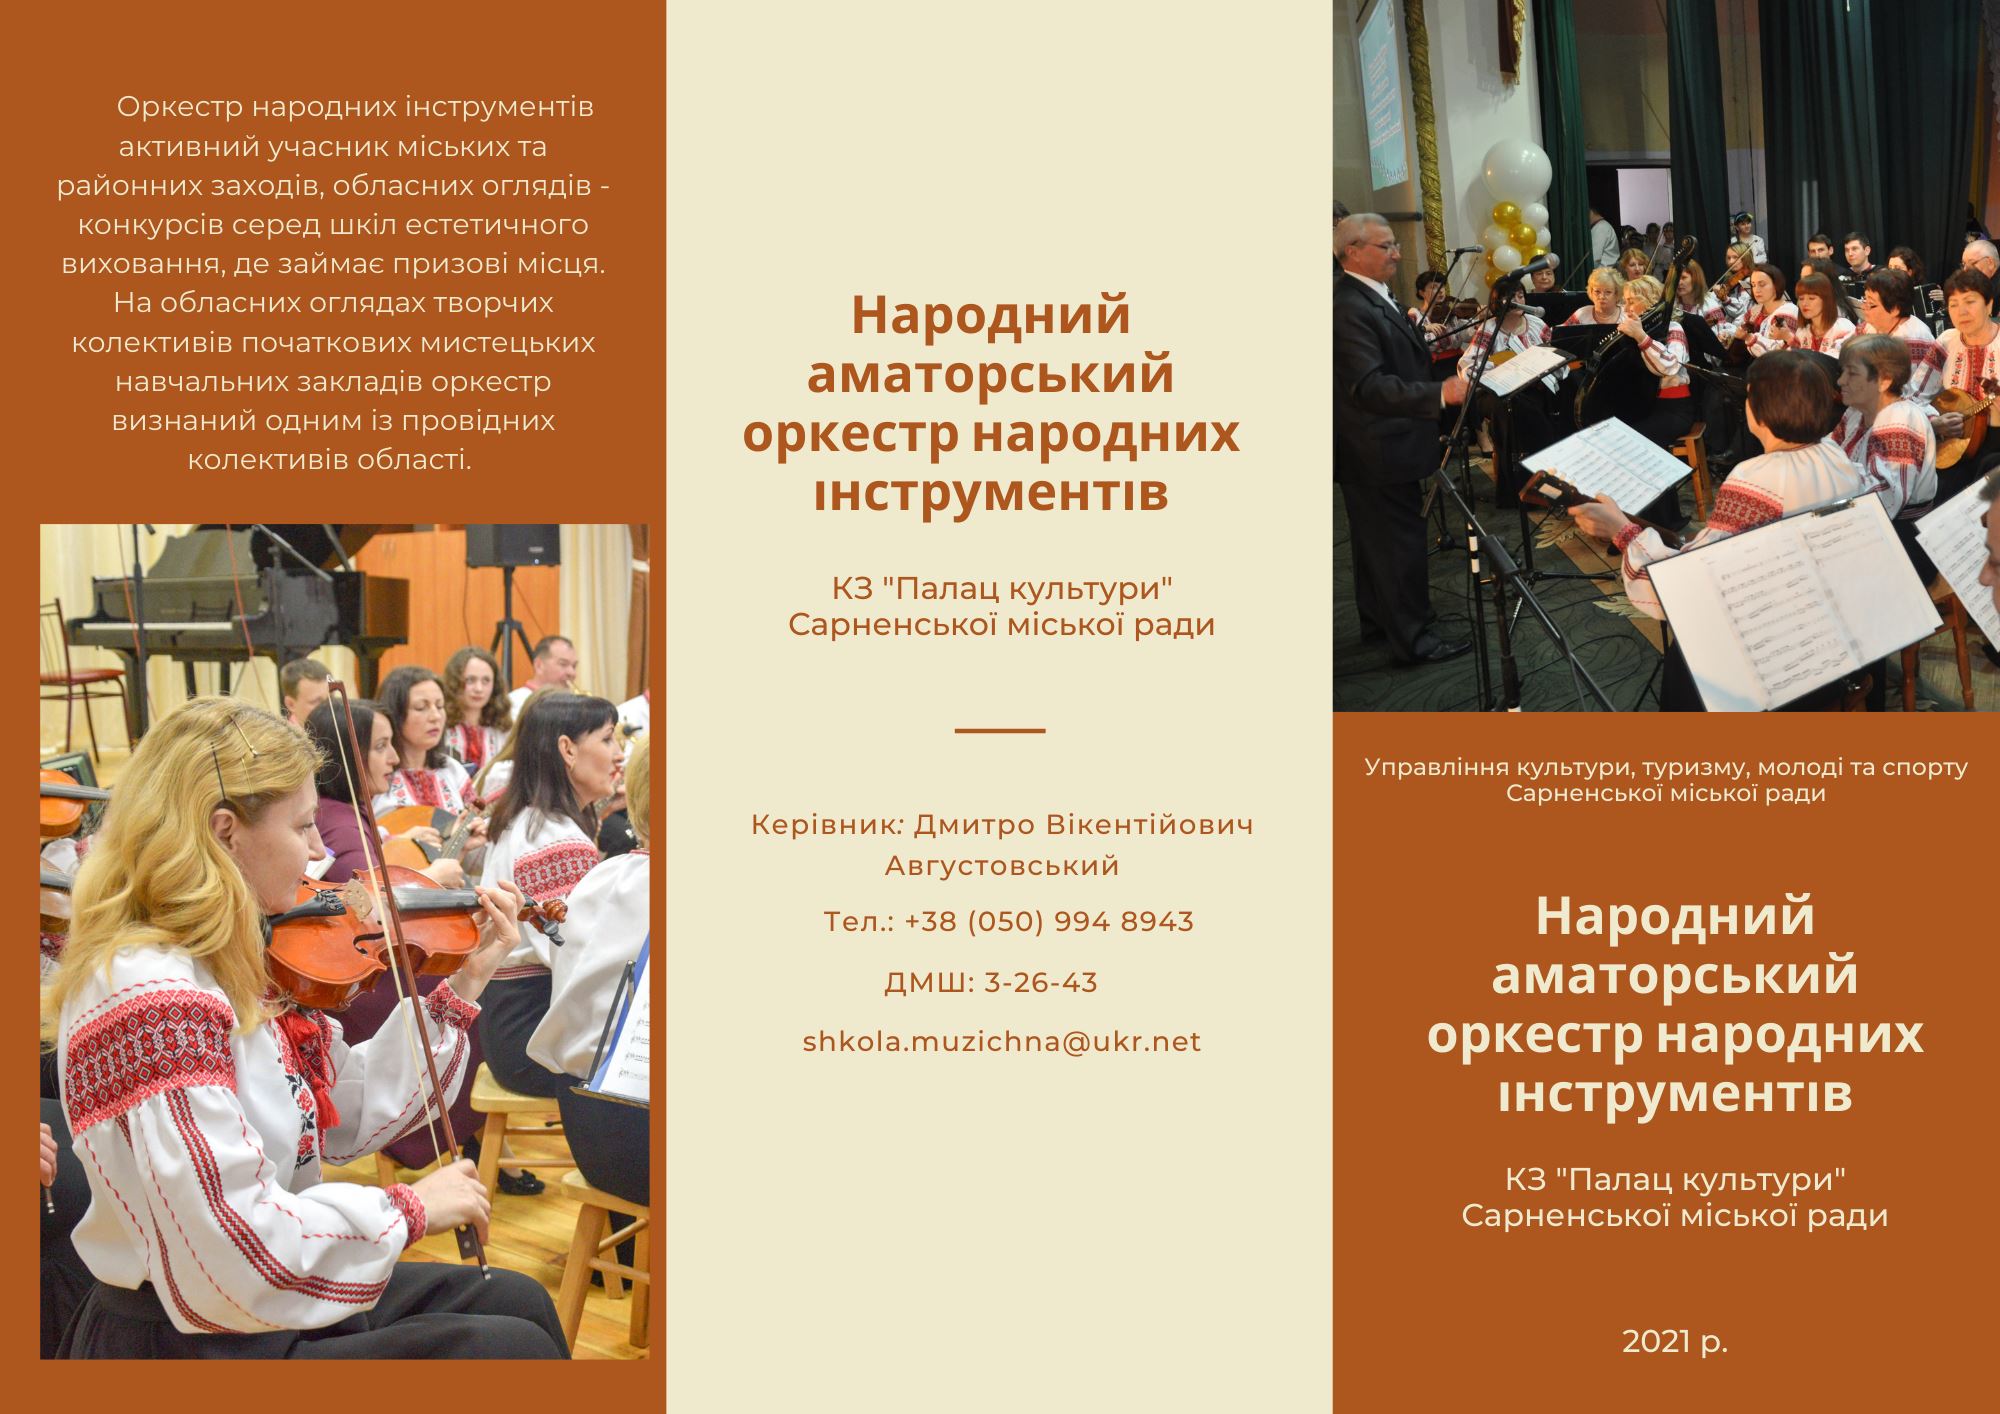 Народний аматорський оркестр народних інструментів